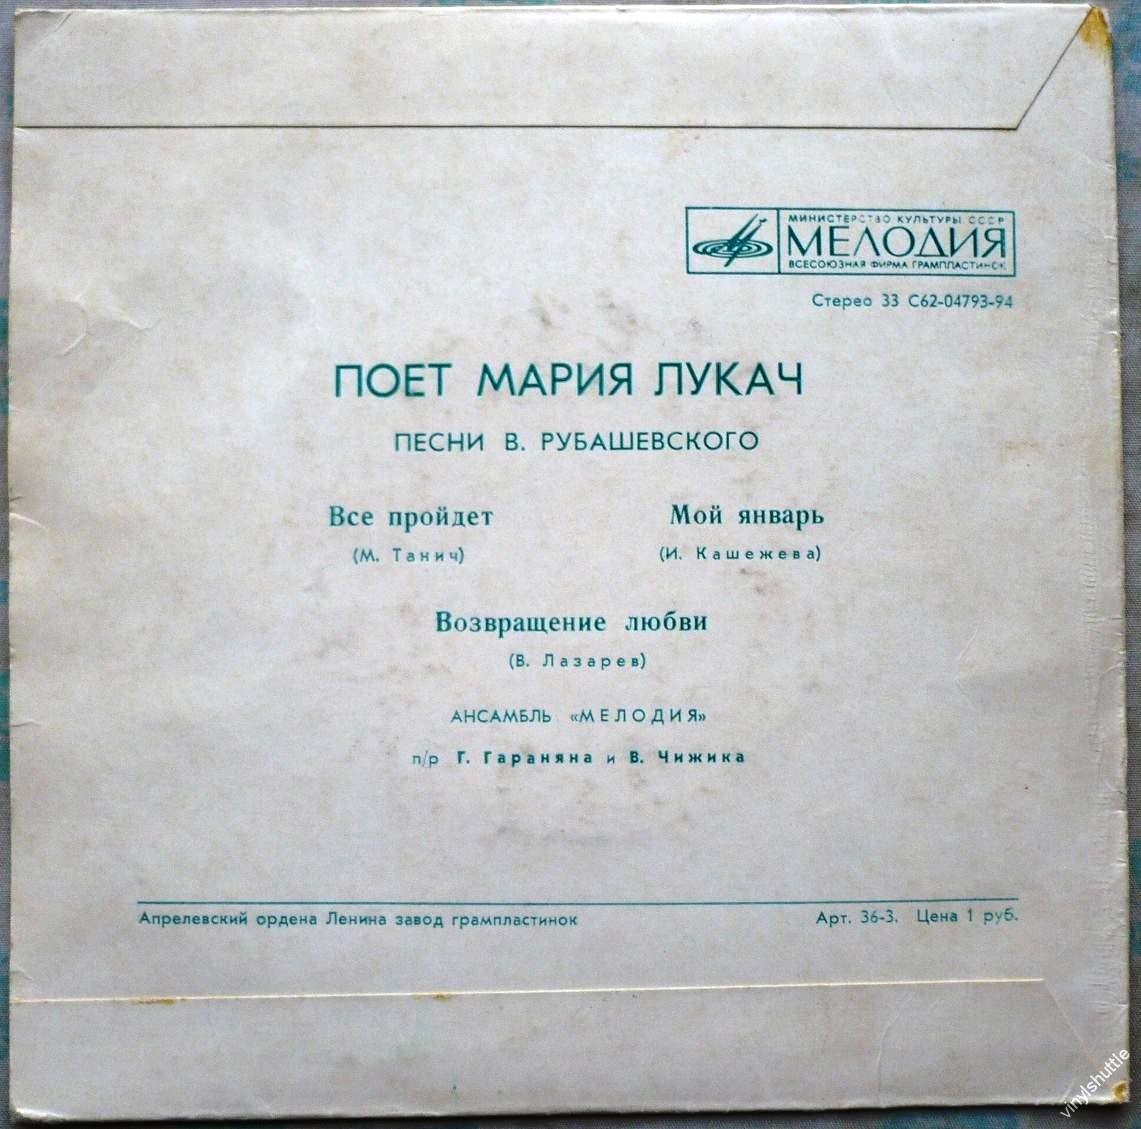 Мария Лукач поет песни В. Рубашевского